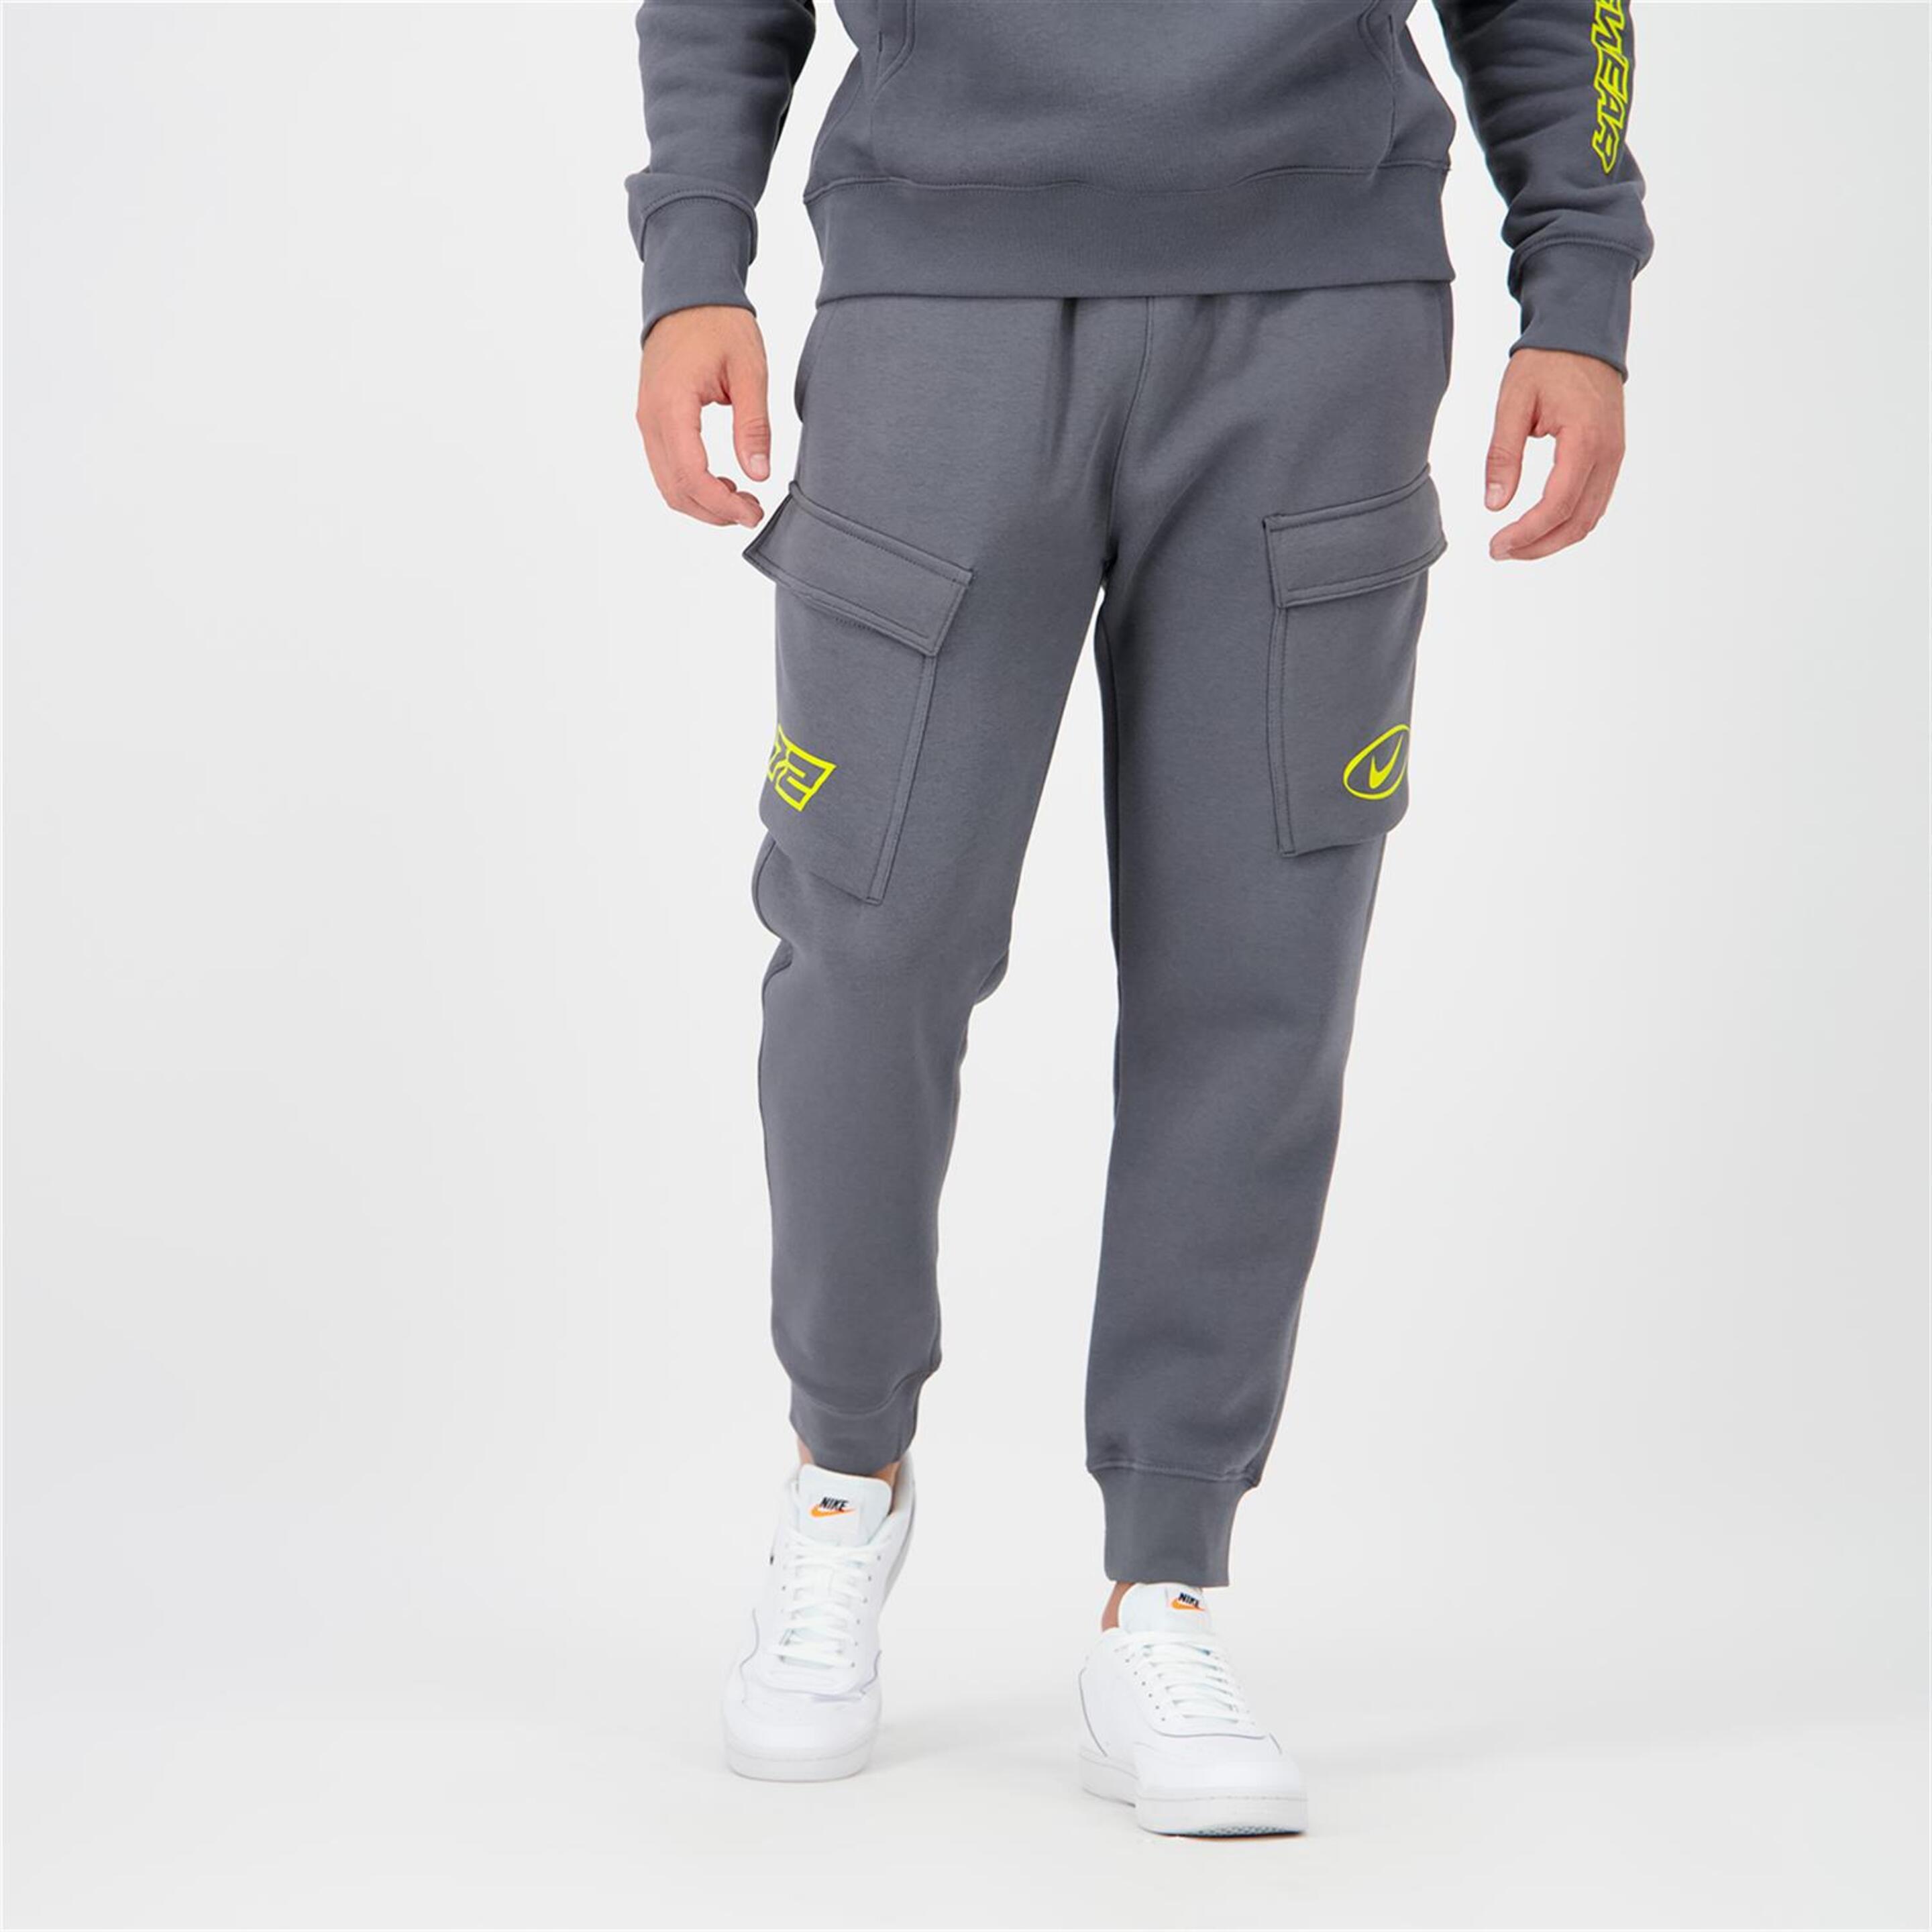 Pantalón Puño Nike - gris - Pantalón Cargo Hombre